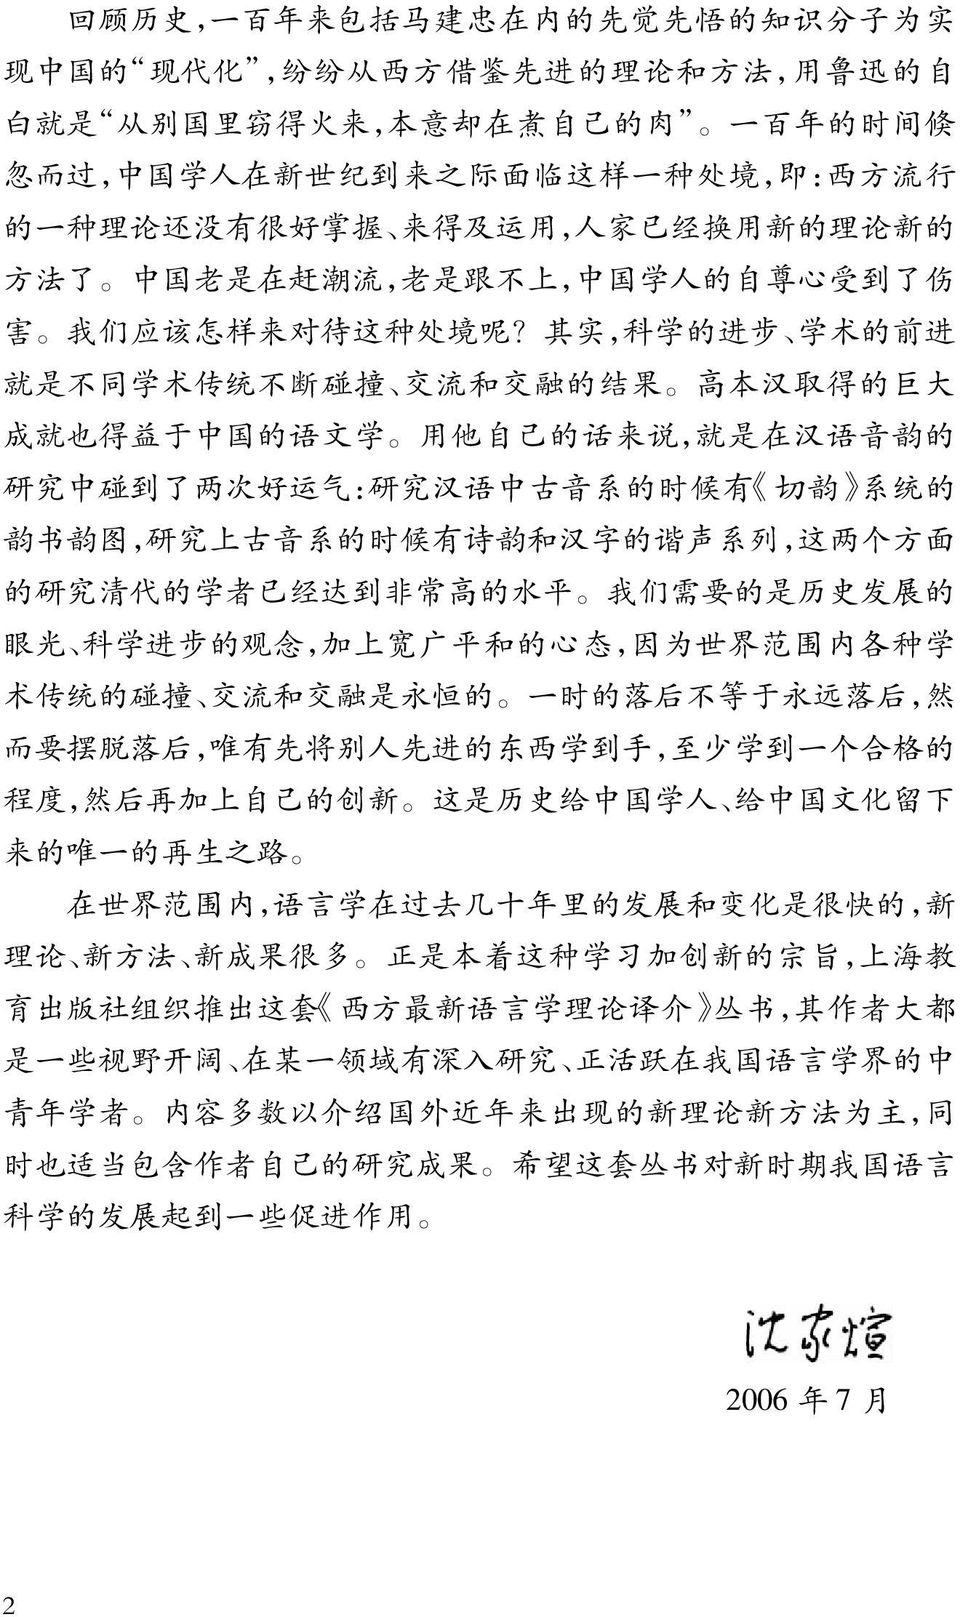 其 实, 科 学 的 进 步 学 术 的 前 进 就 是 不 同 学 术 传 统 不 断 碰 撞 交 流 和 交 融 的 结 果 高 本 汉 取 得 的 巨 大 成 就 也 得 益 于 中 国 的 语 文 学 用 他 自 己 的 话 来 说, 就 是 在 汉 语 音 韵 的 研 究 中 碰 到 了 两 次 好 运 气 : 研 究 汉 语 中 古 音 系 的 时 候 有 切 韵 系 统 的 韵 书